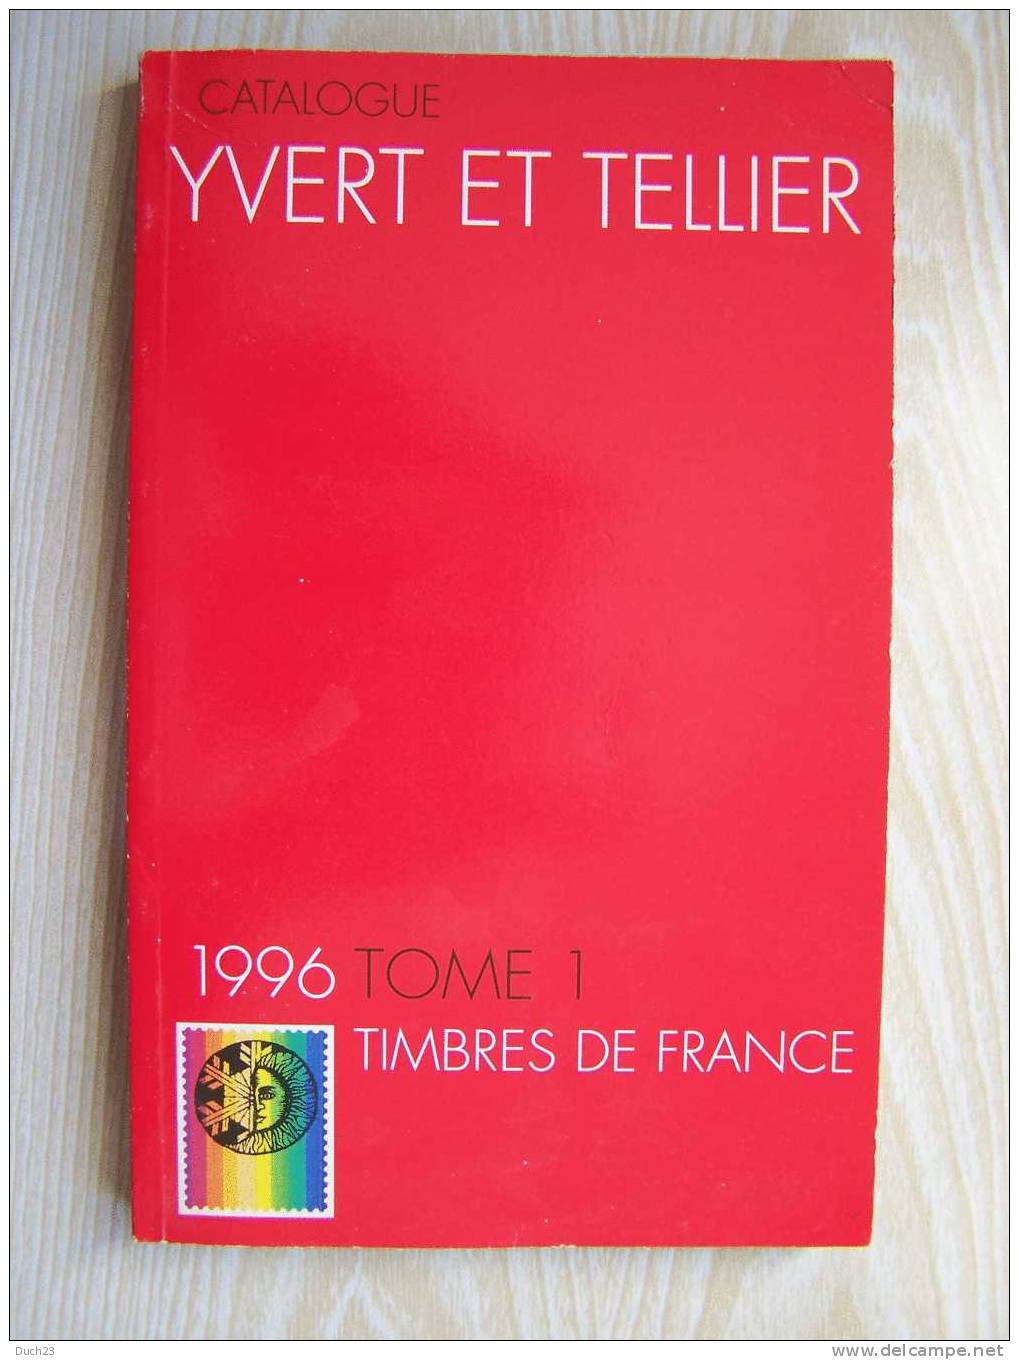 CATALOGUE DE COTATION YVERT ET TELLIER ANNEE 1996 TOME 1   TRES BON ETAT   REF CD - Frankrijk